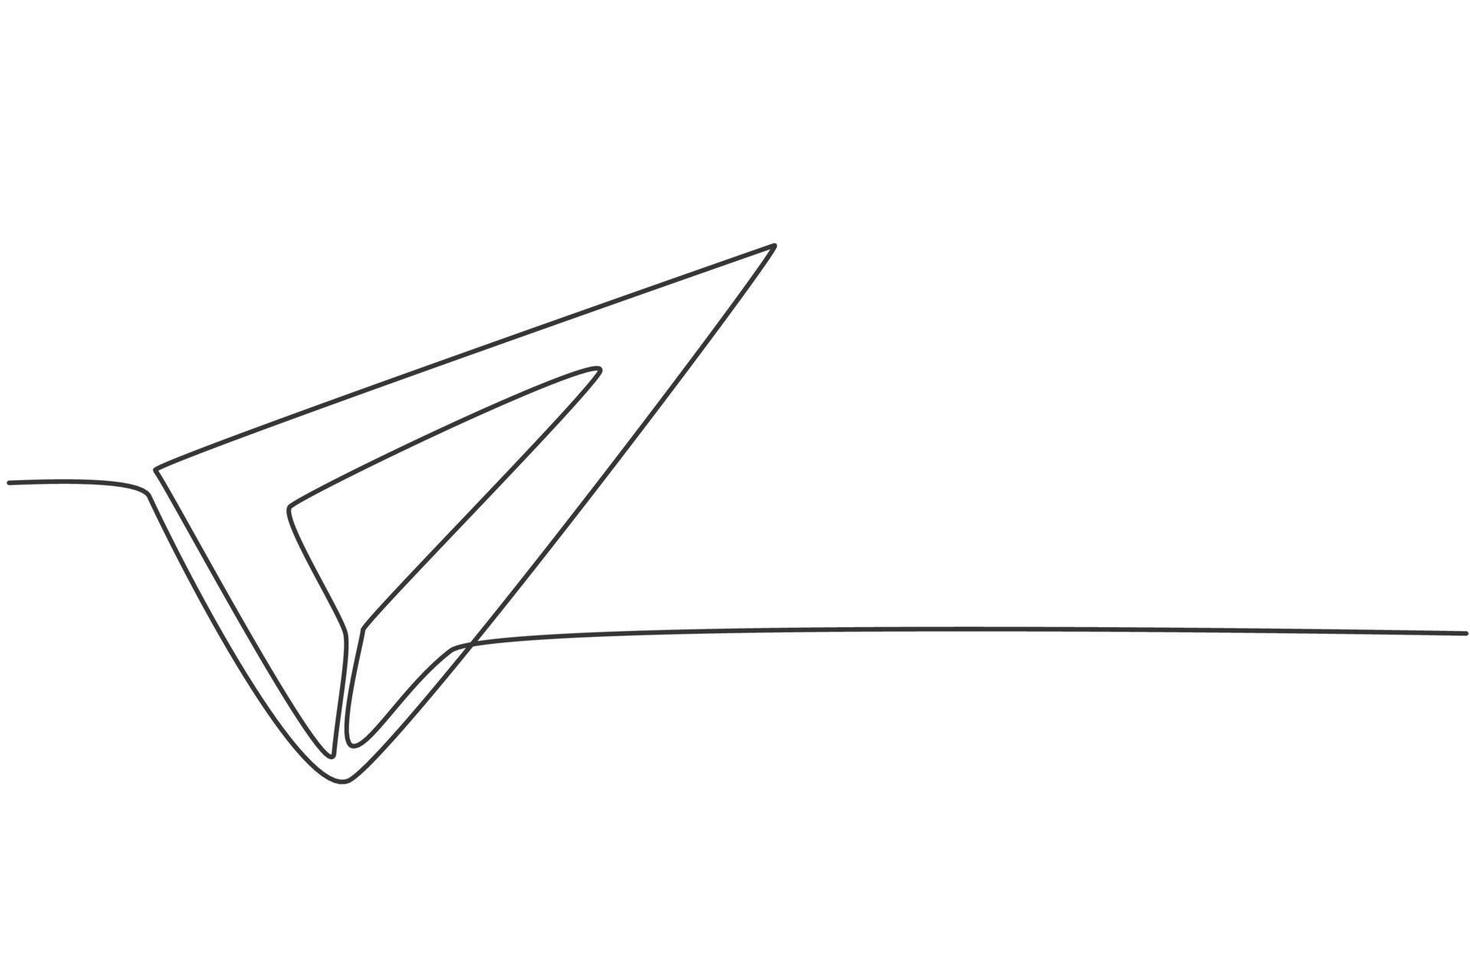 righello triangolare inossidabile con disegno a linea continua. strumento di misura per misurare la lunghezza. torna a scuola concetto minimo disegnato a mano. disegno a linea singola per l'illustrazione grafica vettoriale dell'istruzione